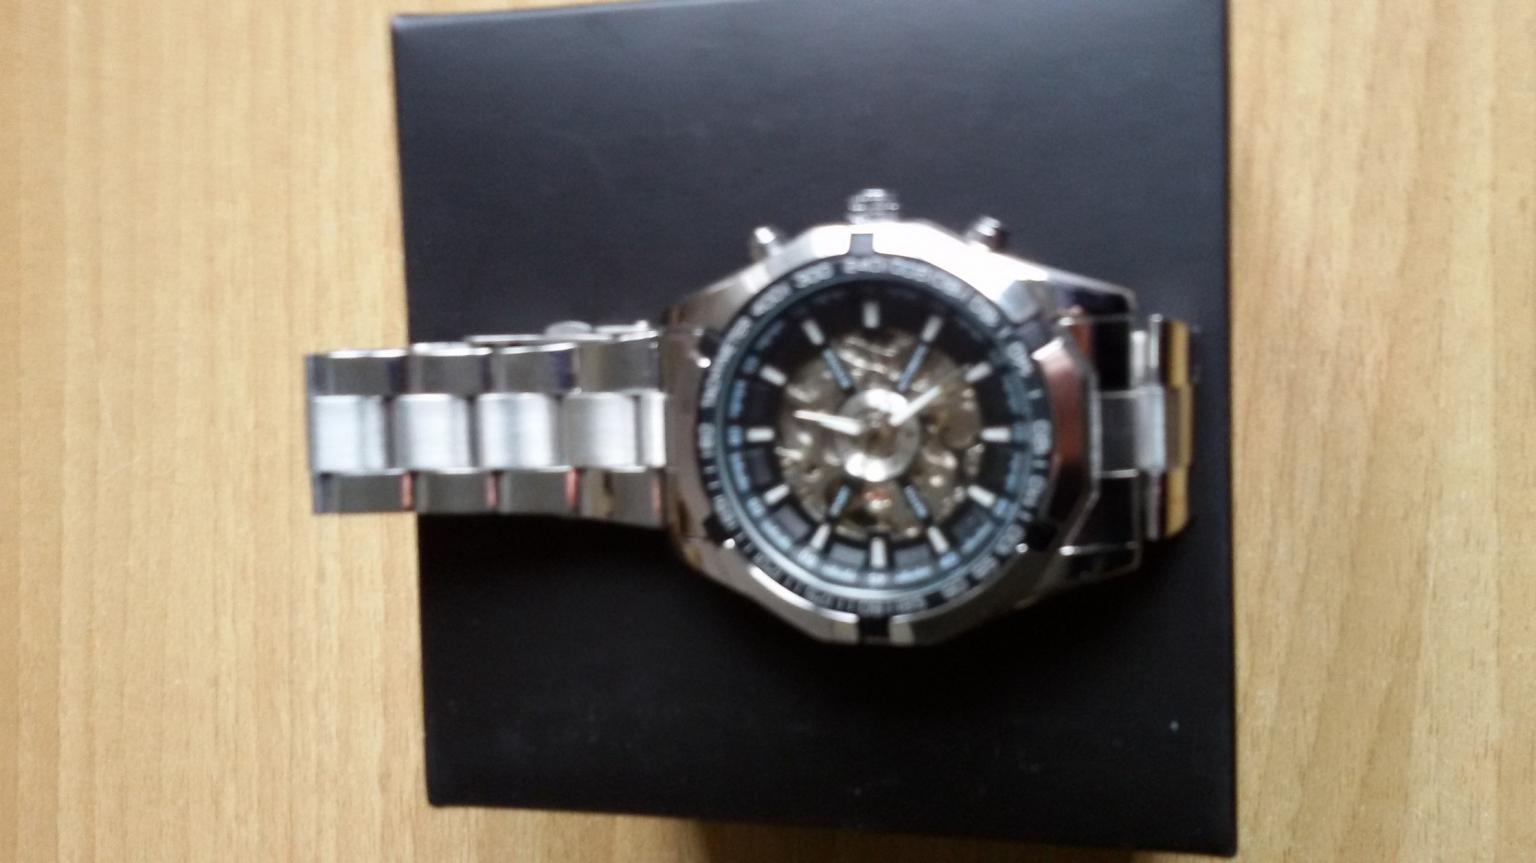 orologio HUGO GERARD nuovo in 89031 Bovalino for €45.00 for sale | Shpock